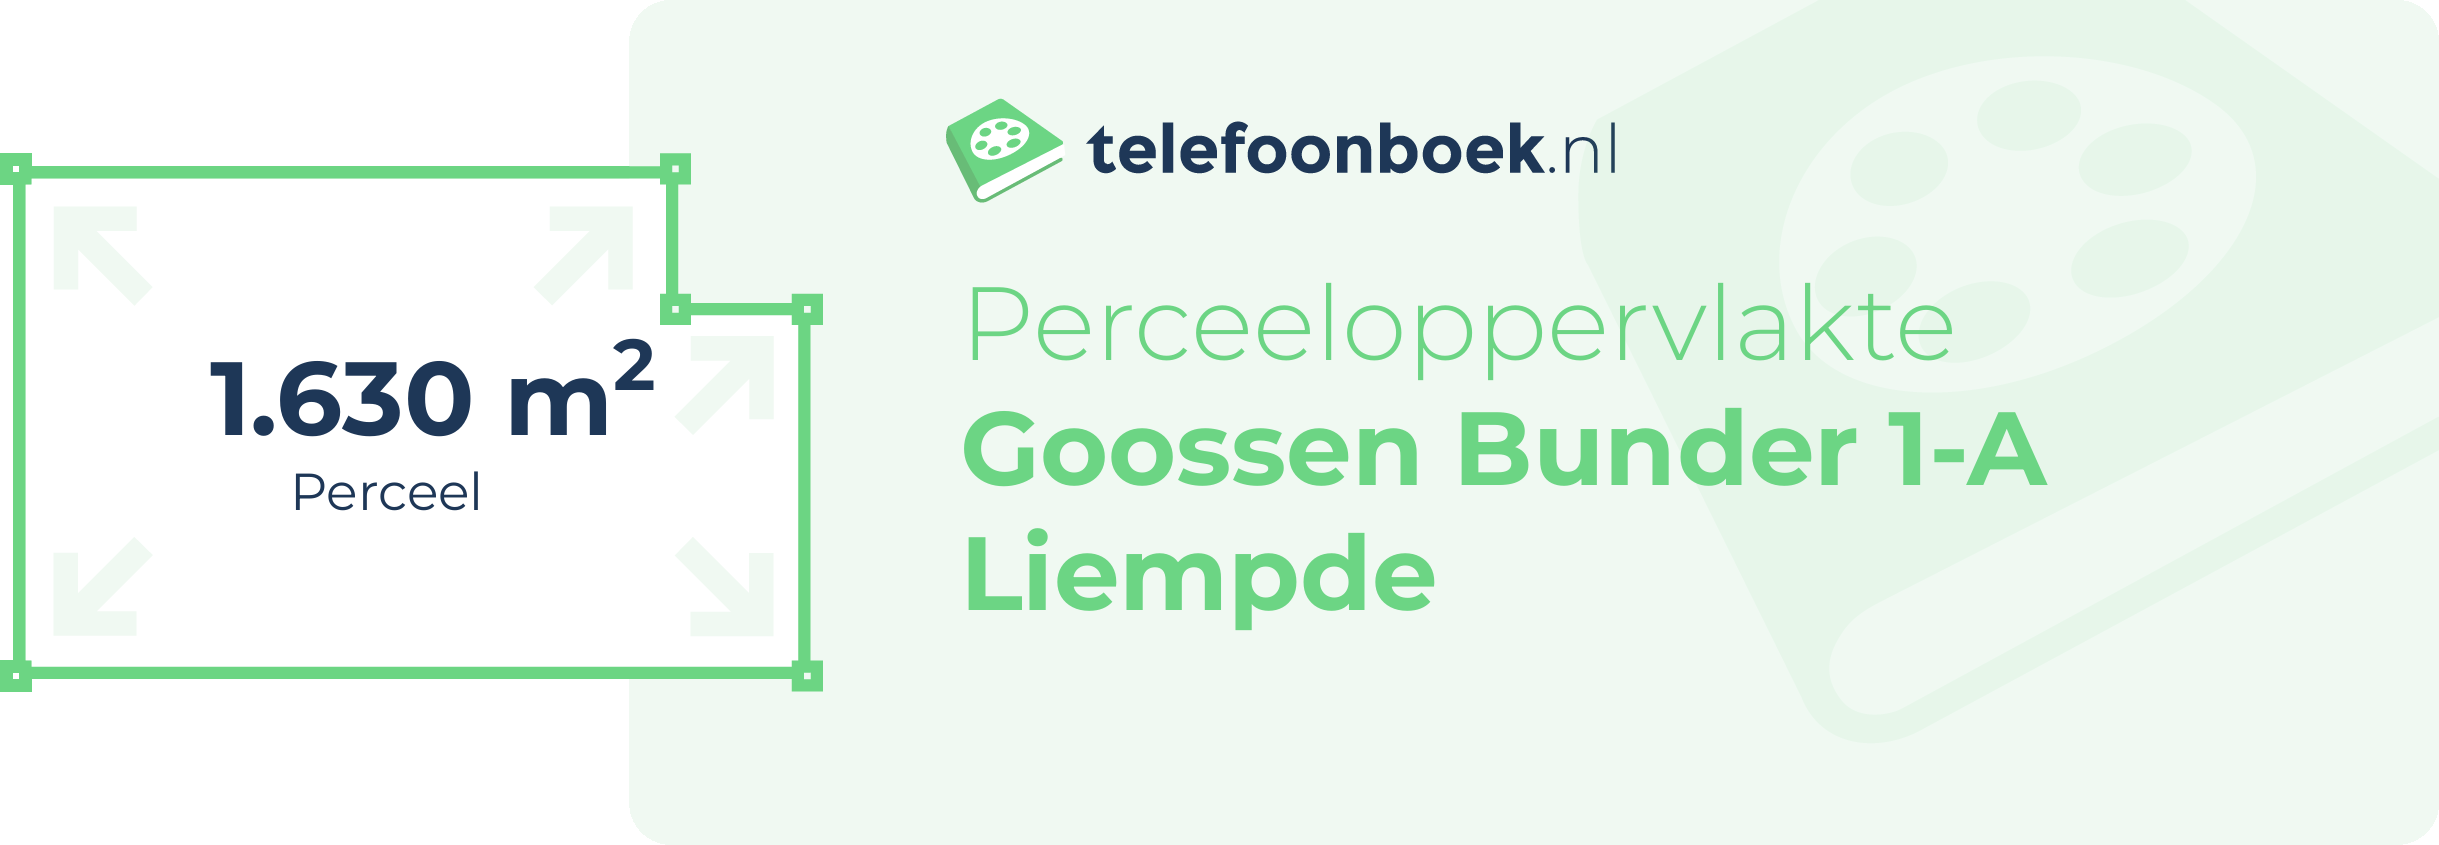 Perceeloppervlakte Goossen Bunder 1-A Liempde